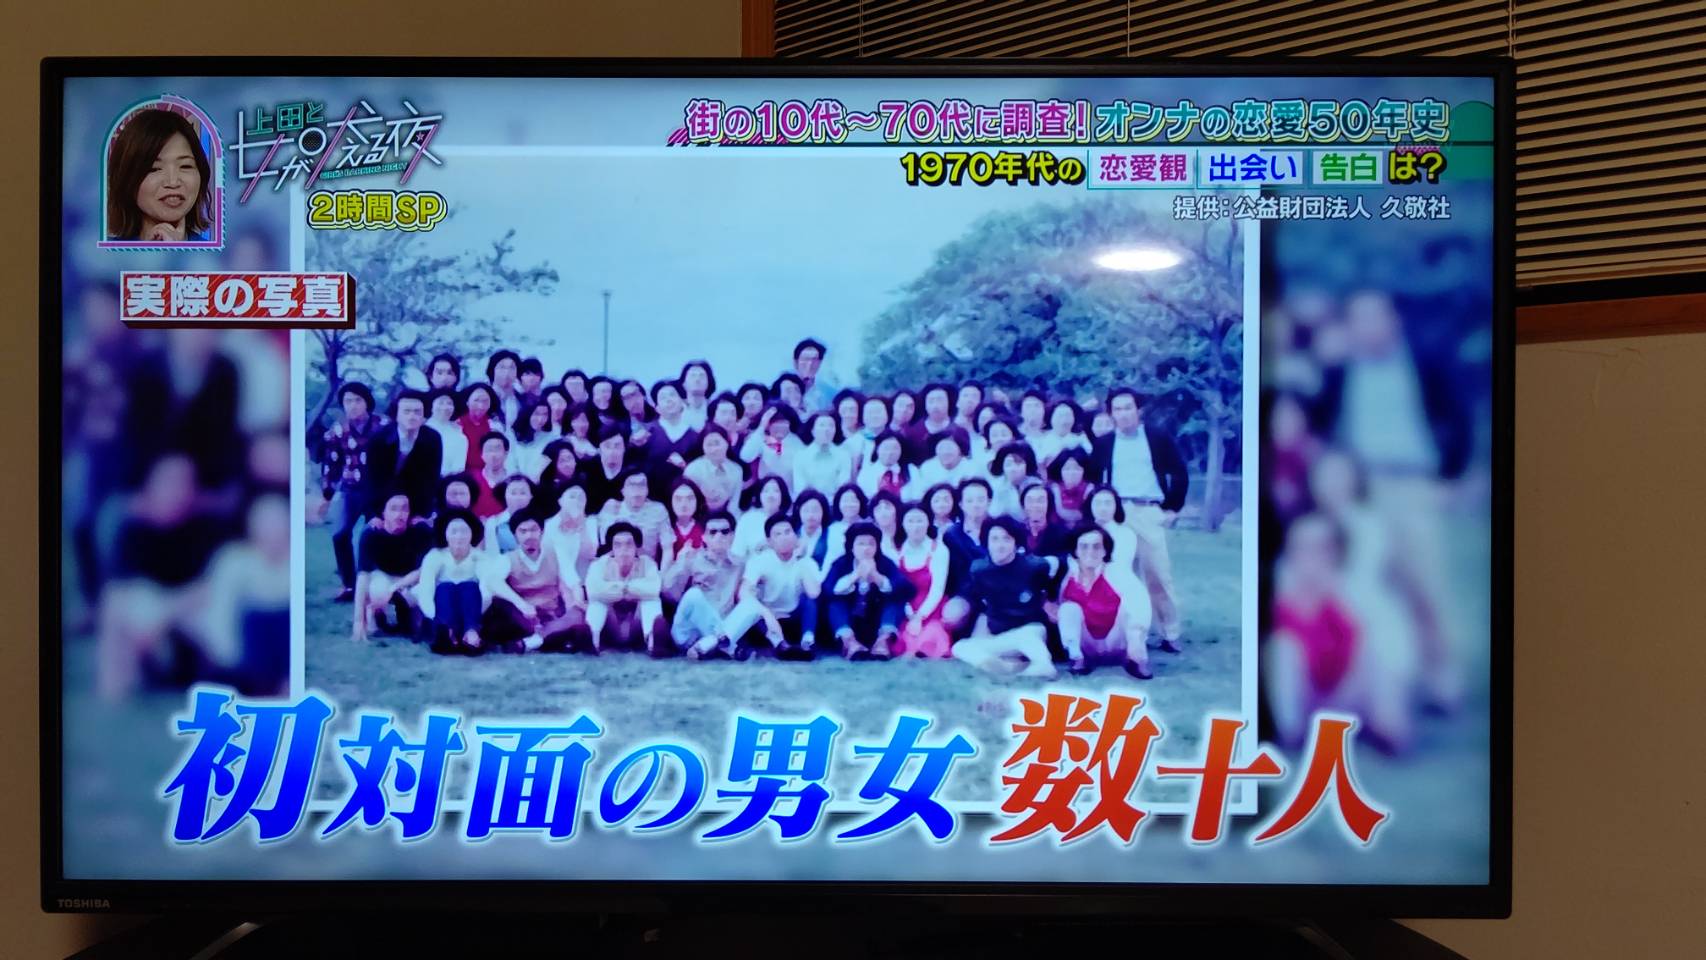 日本テレビ系「上田と女の吠える夜」の番組中で紹介されました